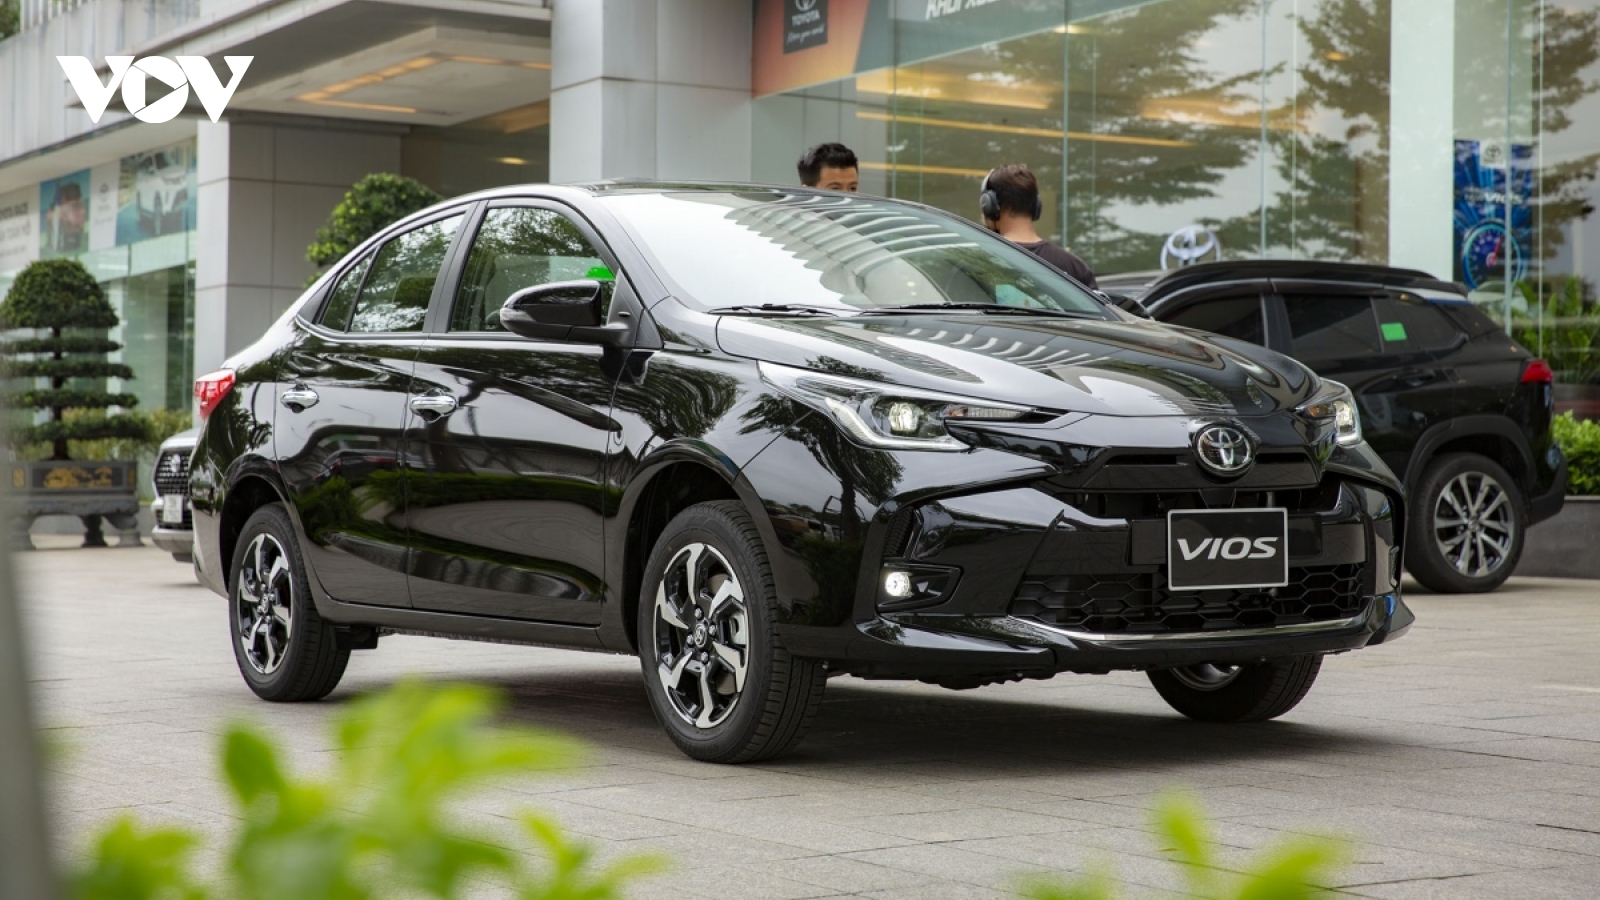 Bảng giá ô tô Toyota tháng 10: Vios tiếp tục ưu đãi phí trước bạ